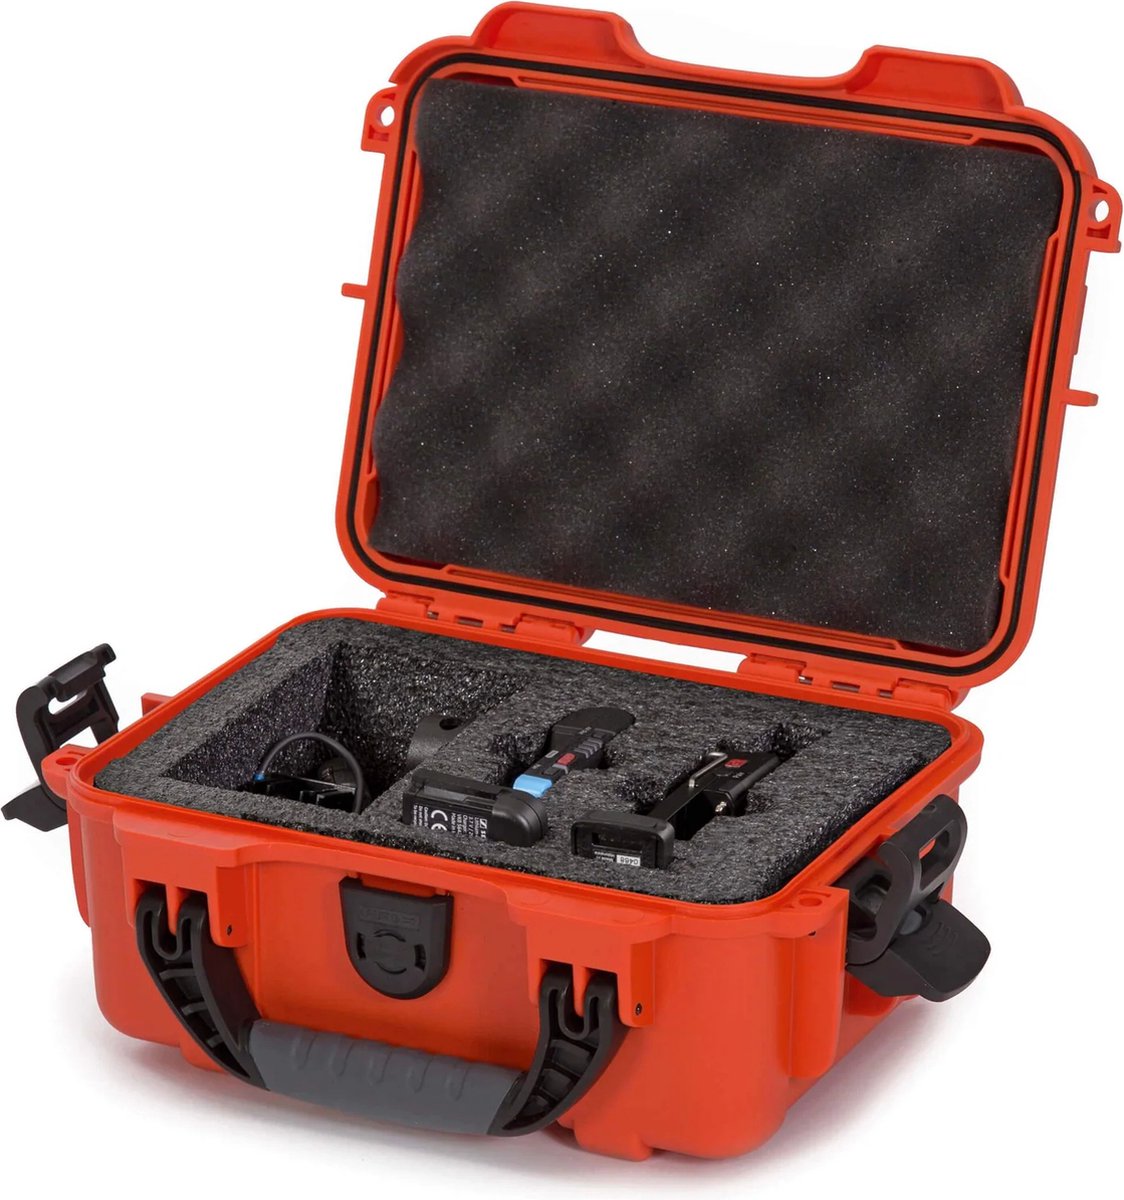 Nanuk 904 Case with Foam Sennheiser AVX - Orange